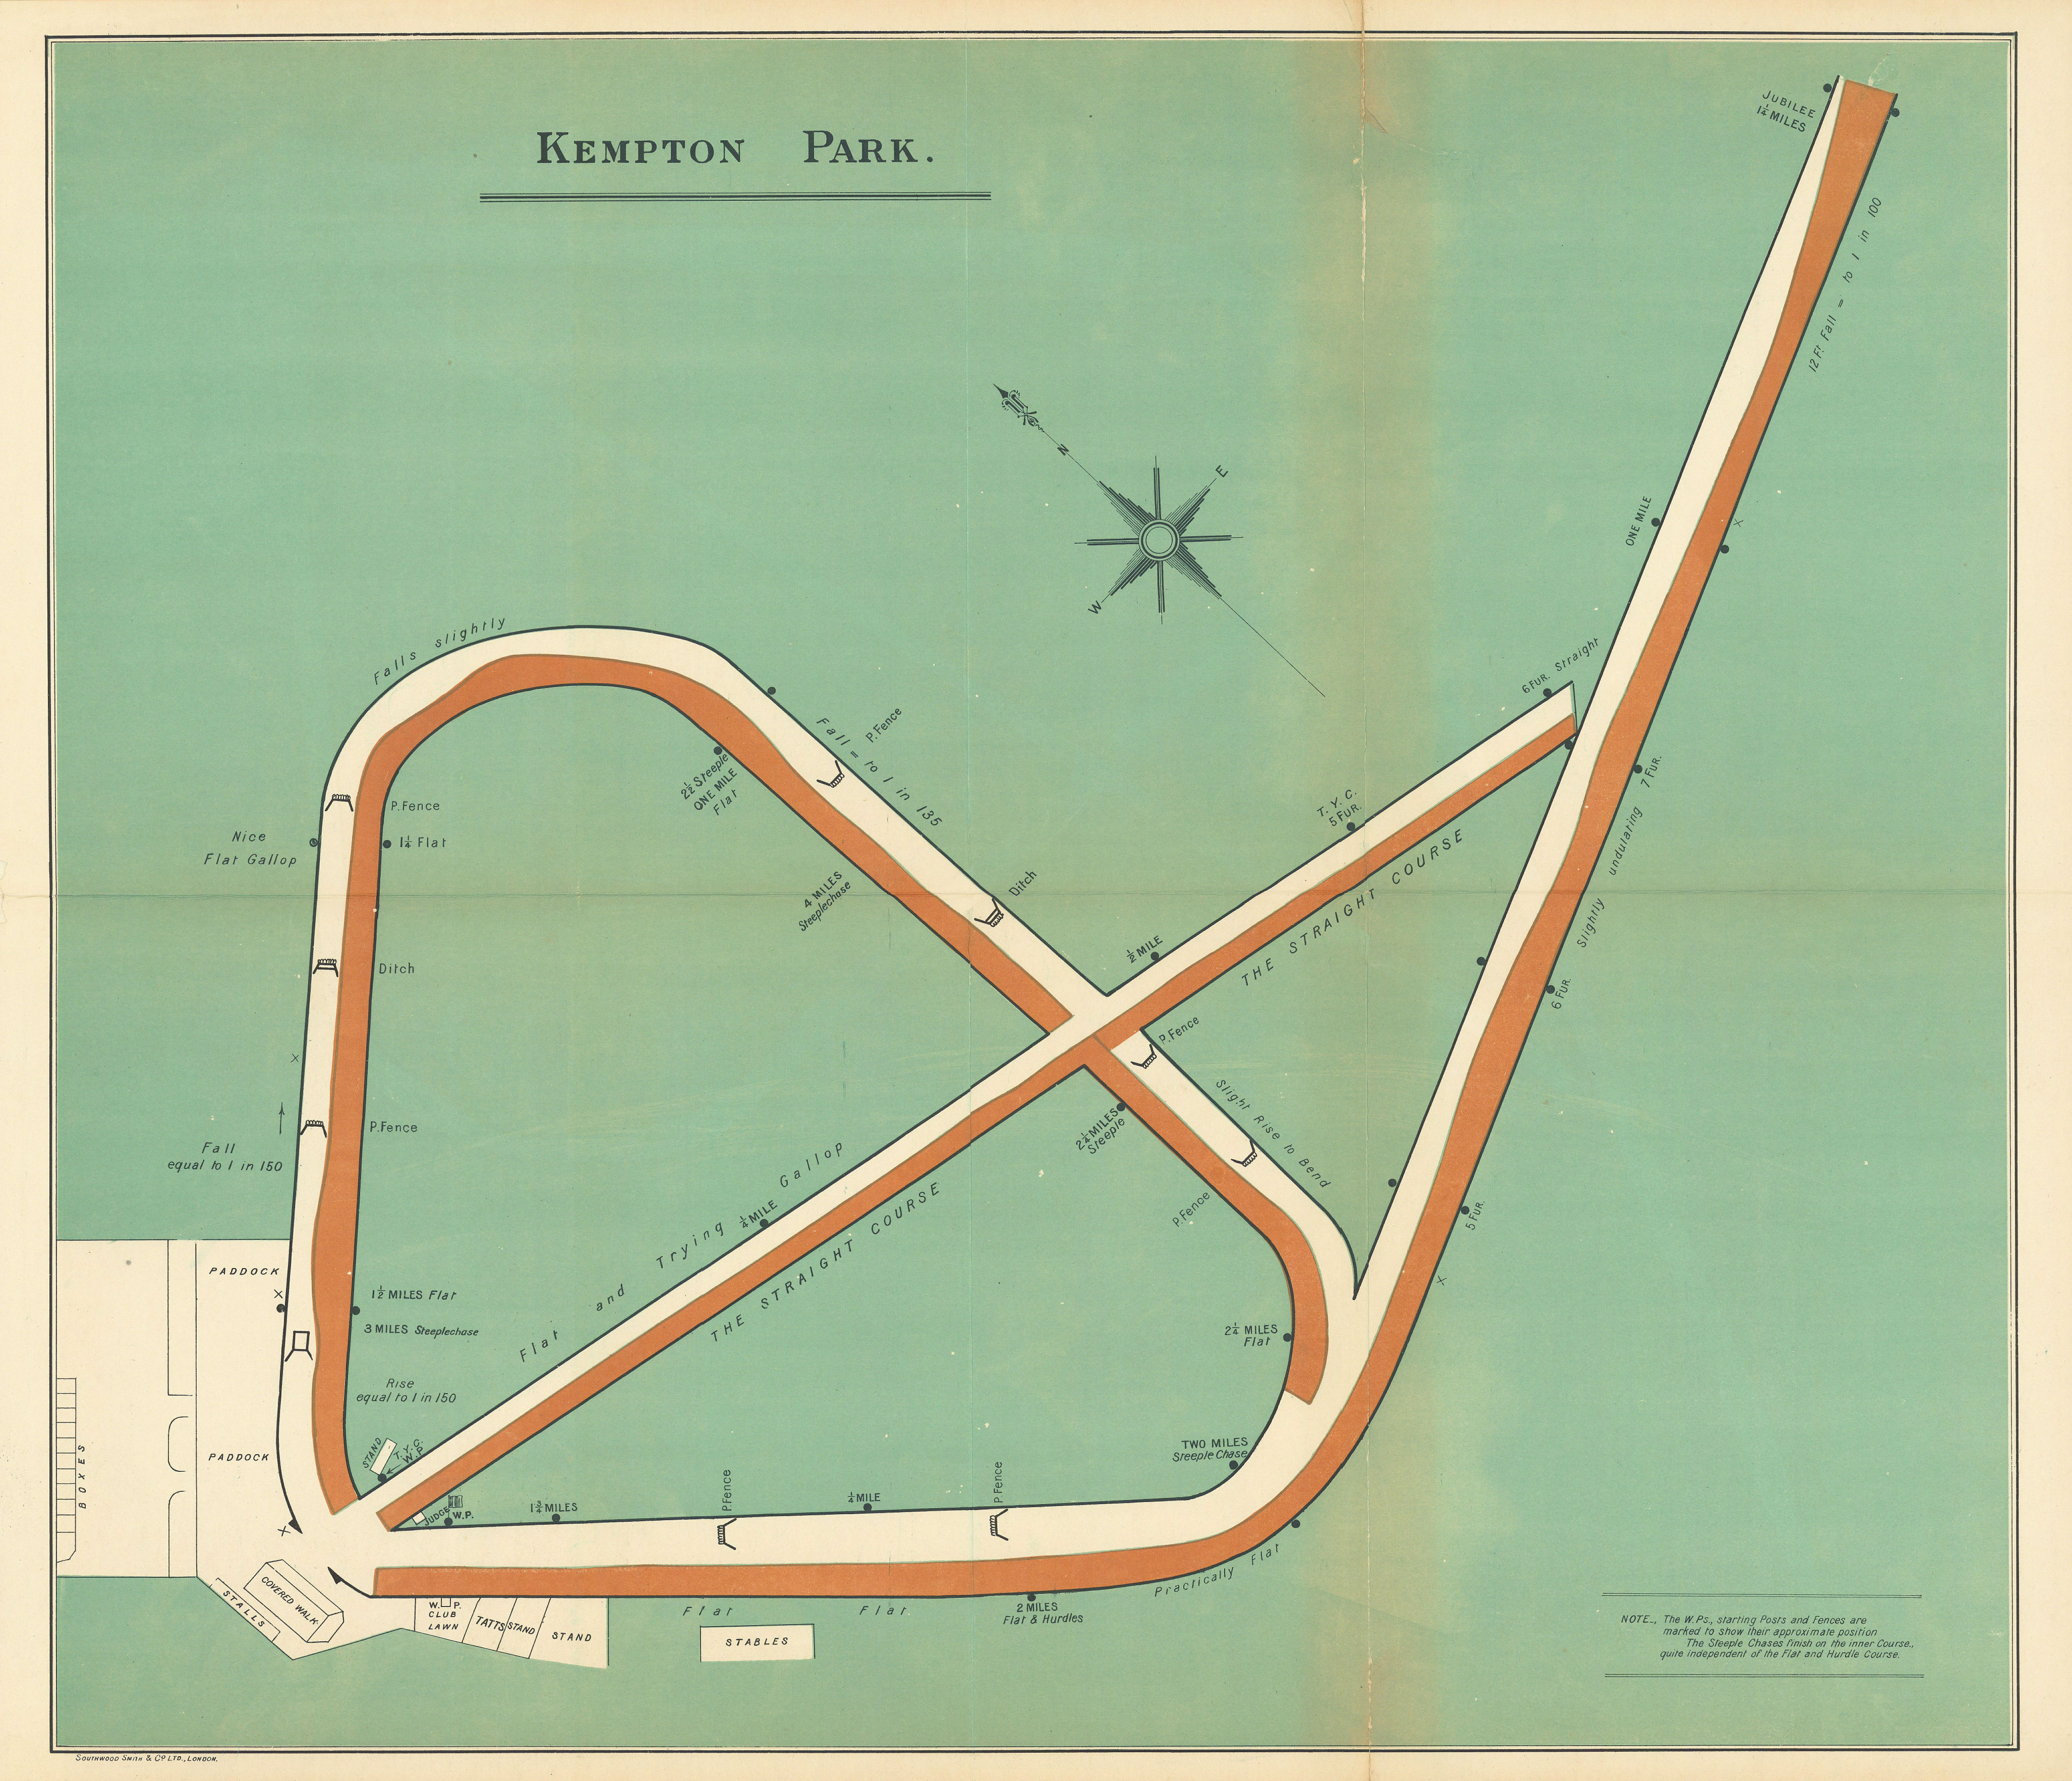 Associate Product Kempton Park racecourse, Surrey. BAYLES 1903 old antique map plan chart